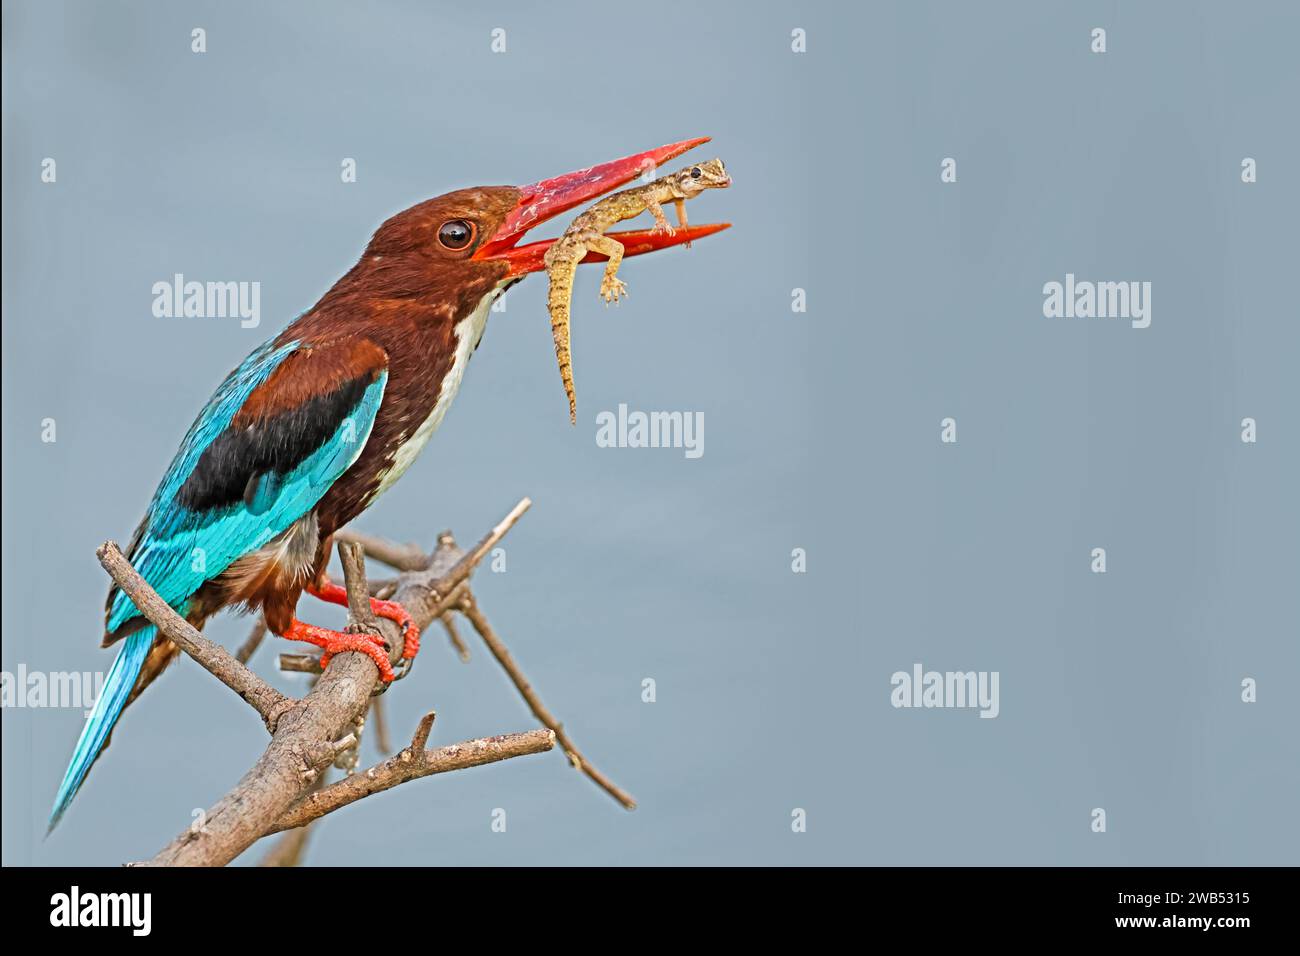 Un oiseau vibrant perché au sommet d'une branche d'arbre, avec un long bec et des ailes déployées Banque D'Images